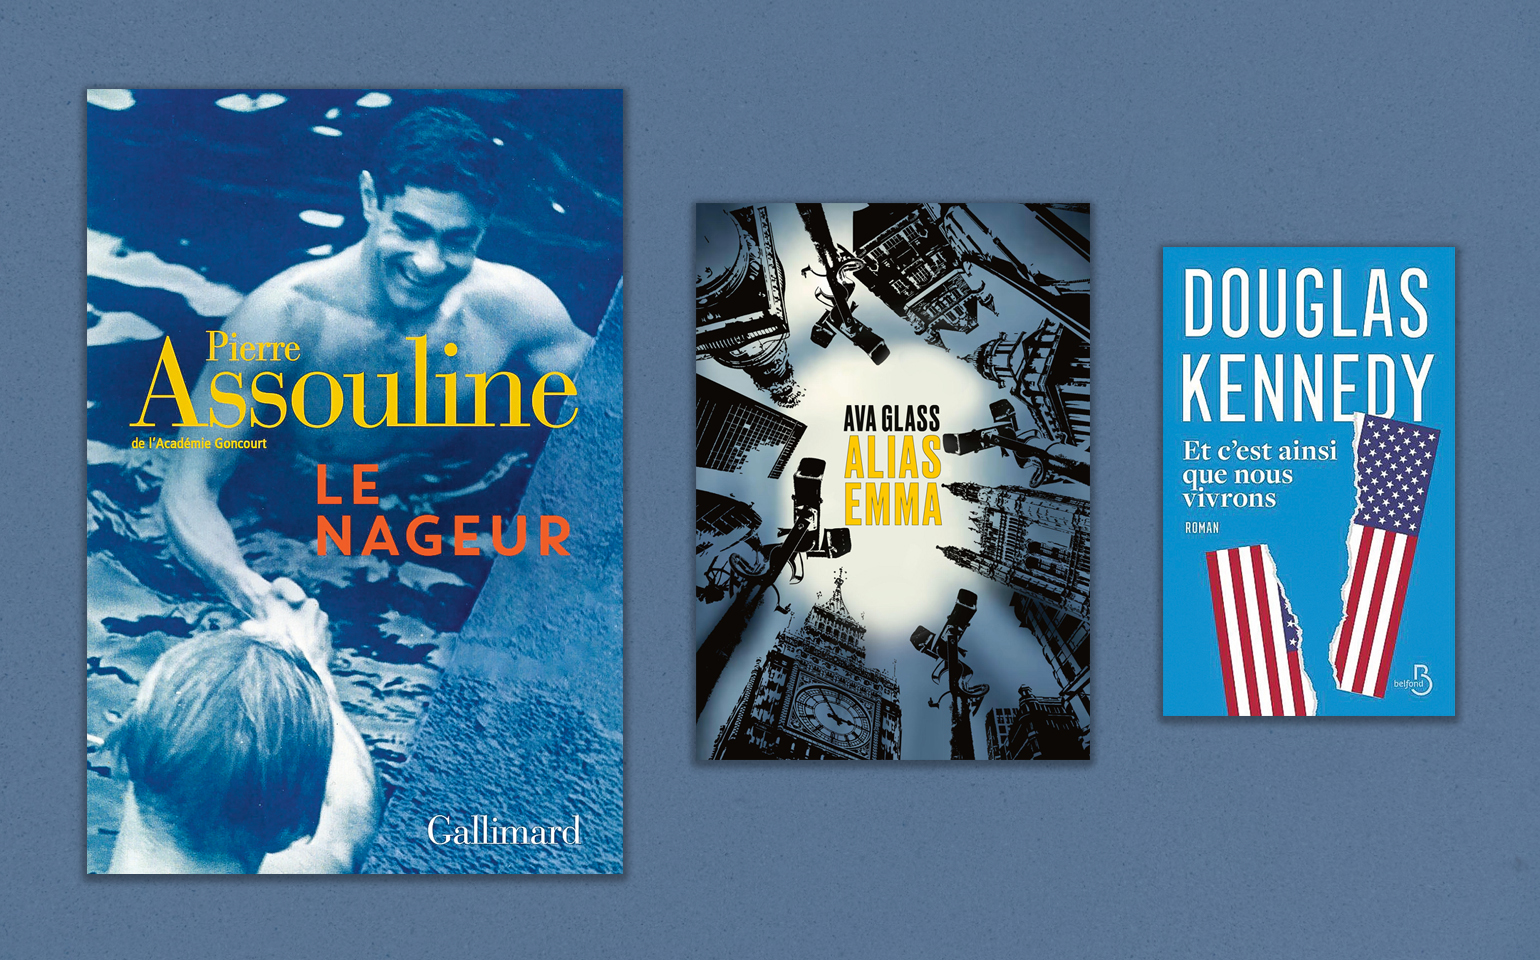 « Le Nageur », de Pierre Assouline, « Alias Emma », d’Ava Glass, « Et c’est ainsi que nous vivrons », de Douglas Kennedy... Trois livres captivants. S.P.